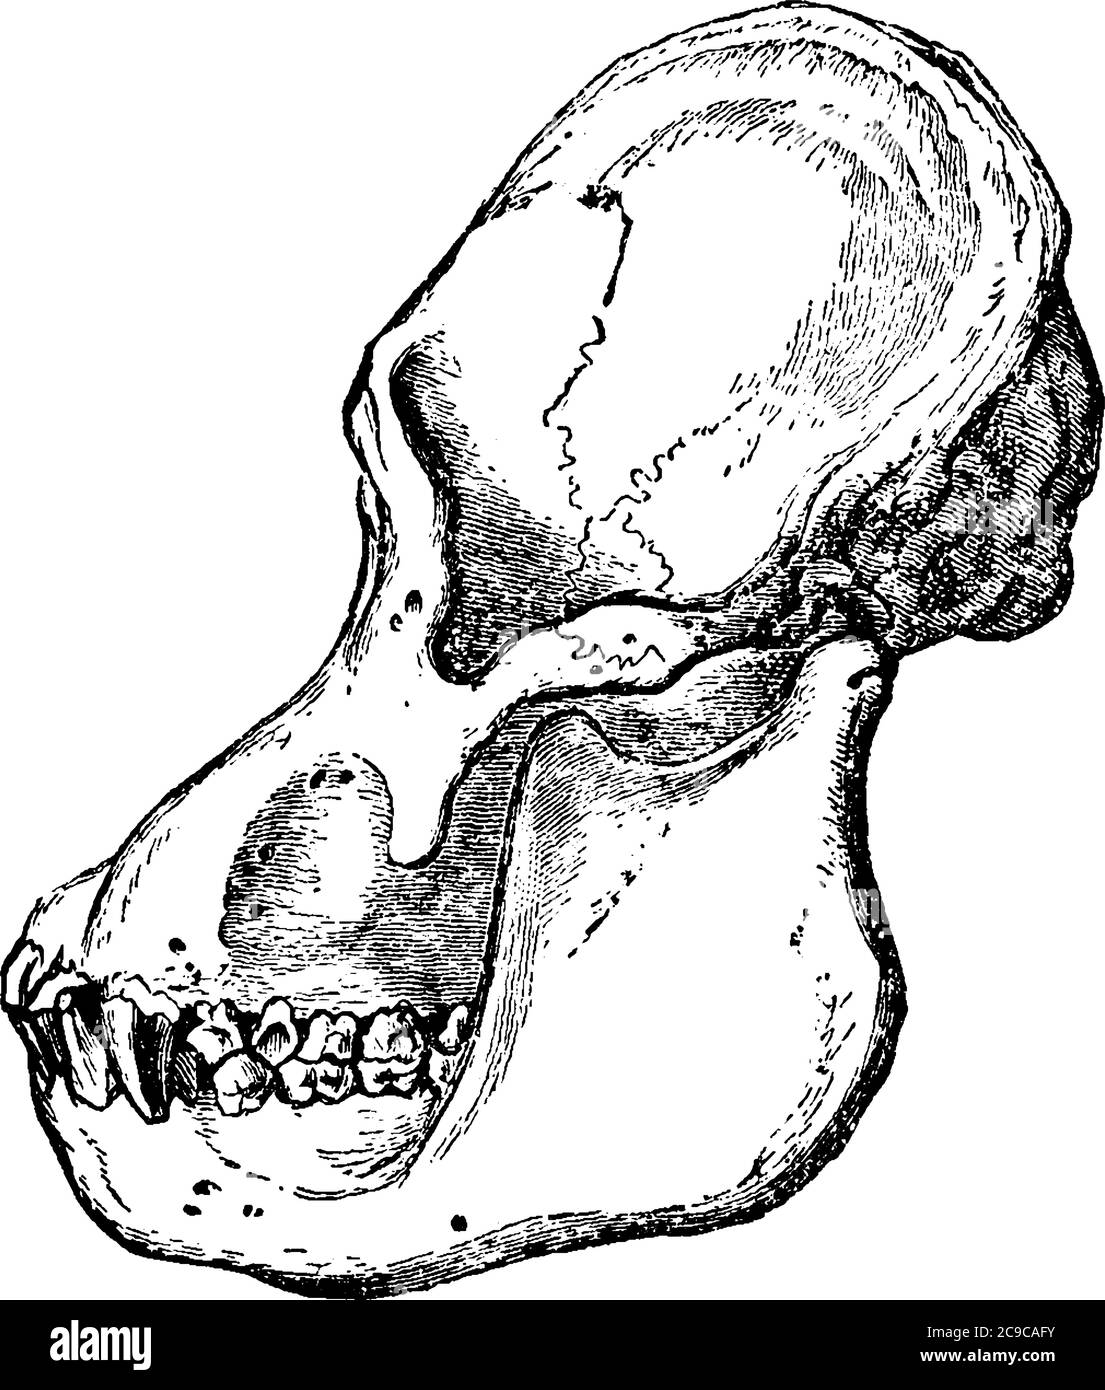 Una rappresentazione tipica della vista laterale del cranio di un Orang adulto, che sono le tre specie esistenti di grandi scimmie, disegno di linea d'annata o eng Illustrazione Vettoriale